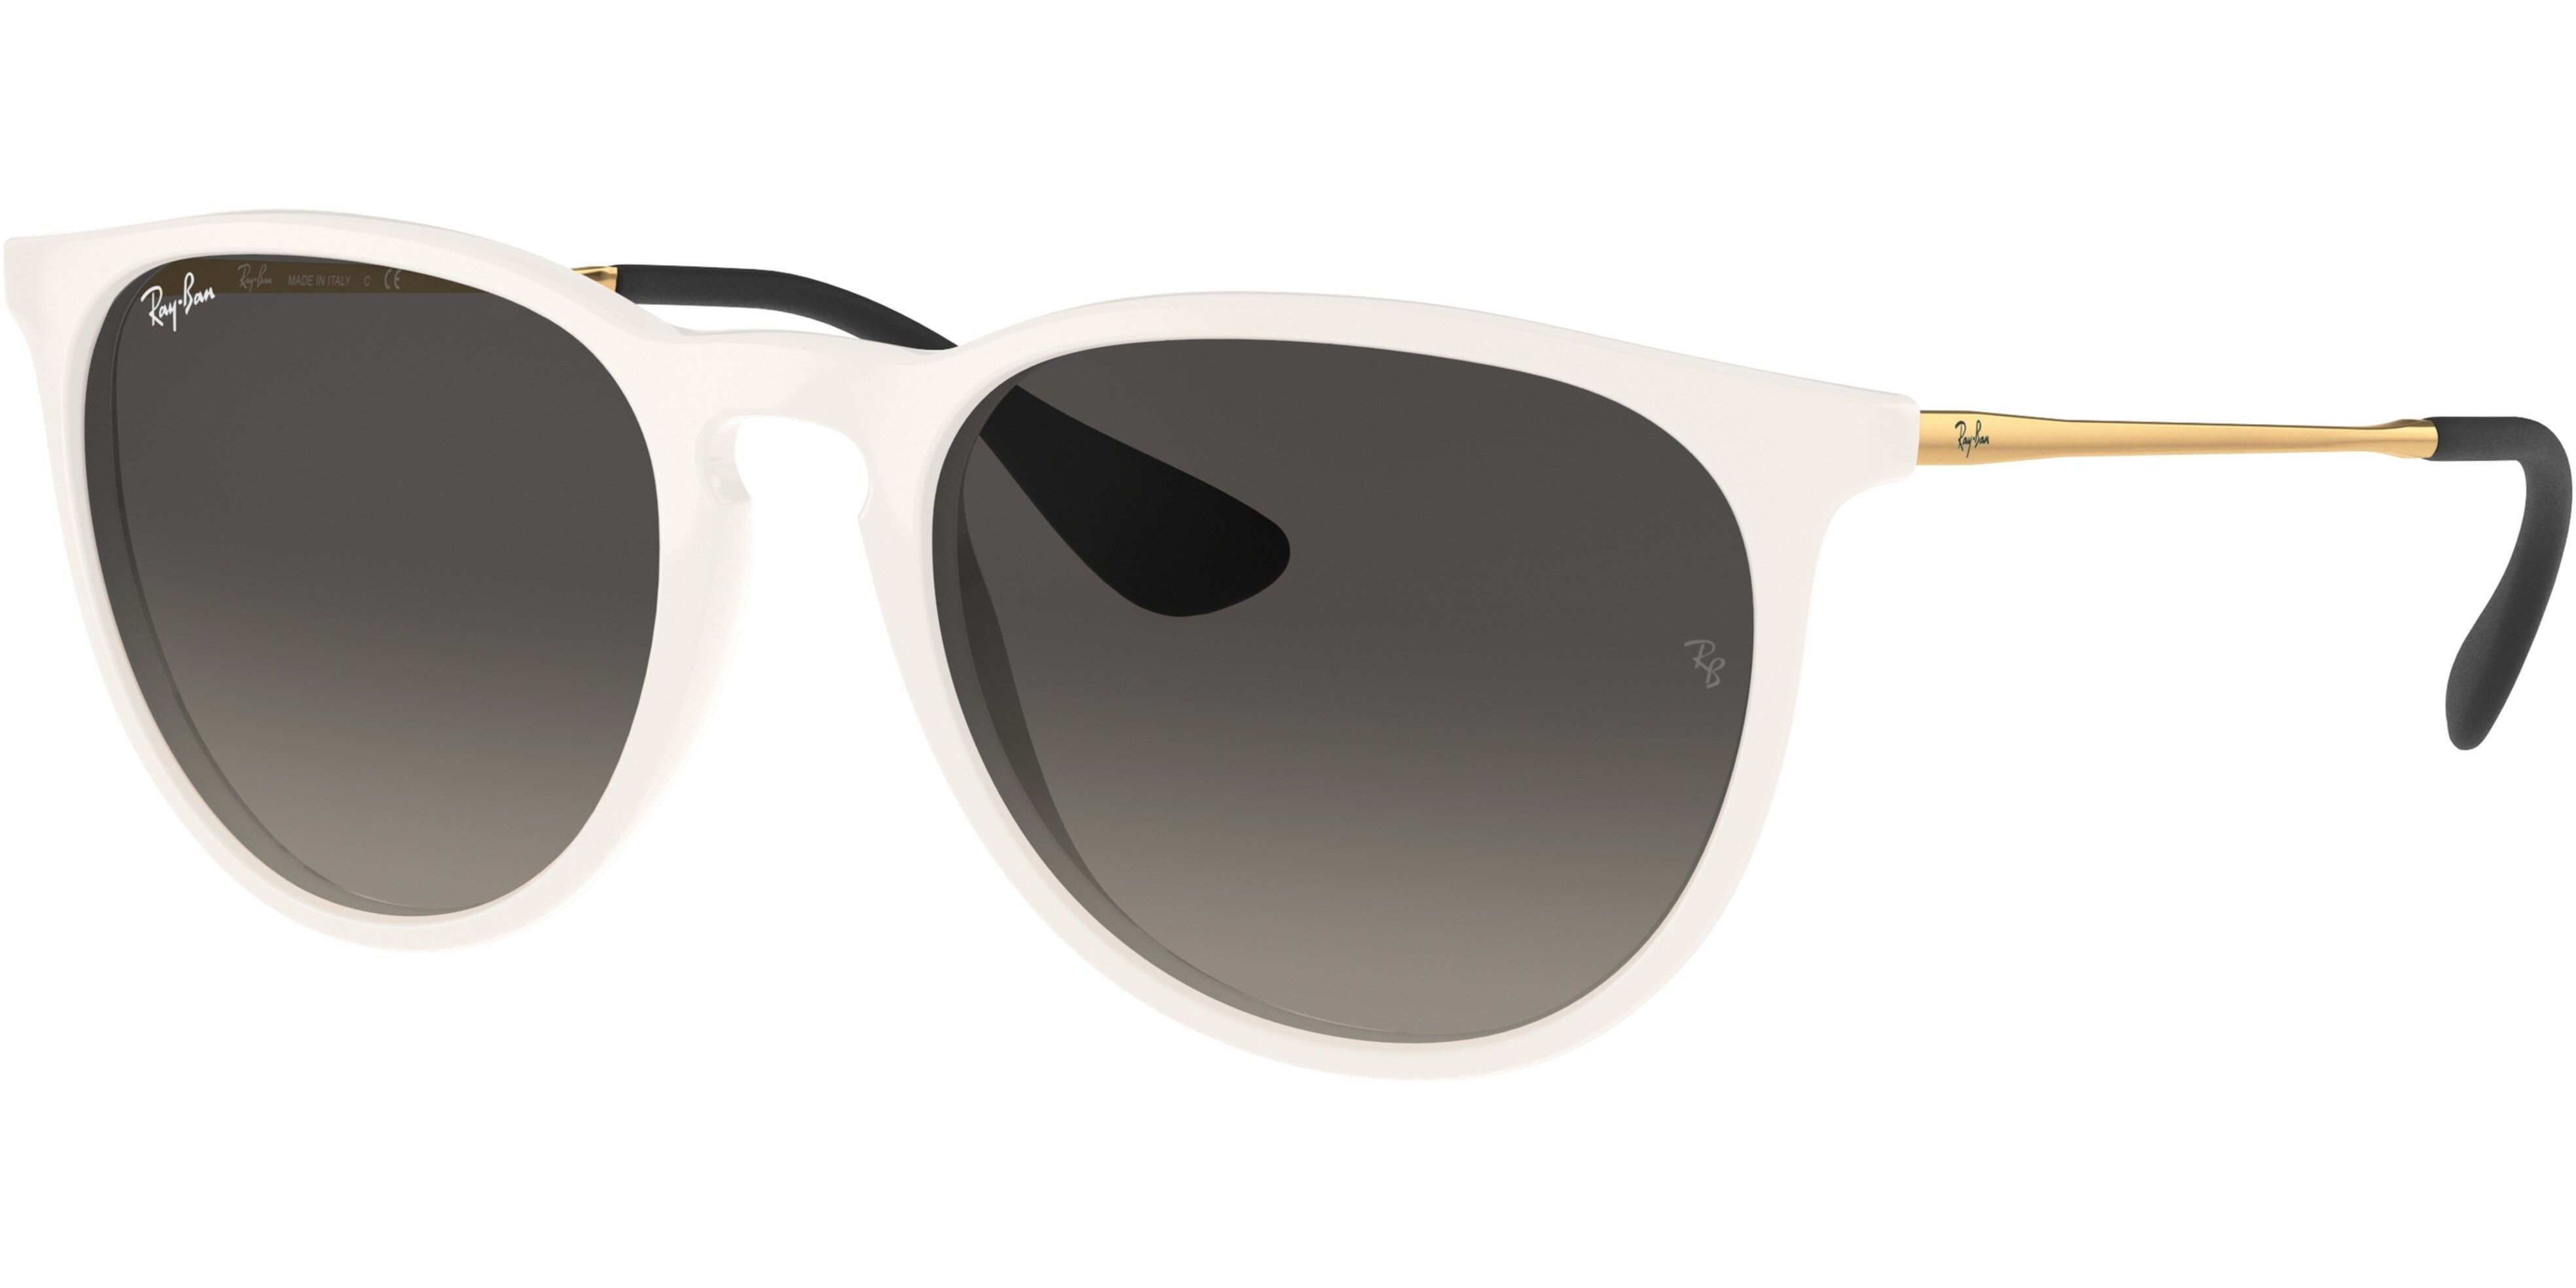 Sluneční brýle Ray-Ban® model 4171, barva obruby bílá lesk zlatá, čočka šedá gradál, kód barevné varianty 631411. 